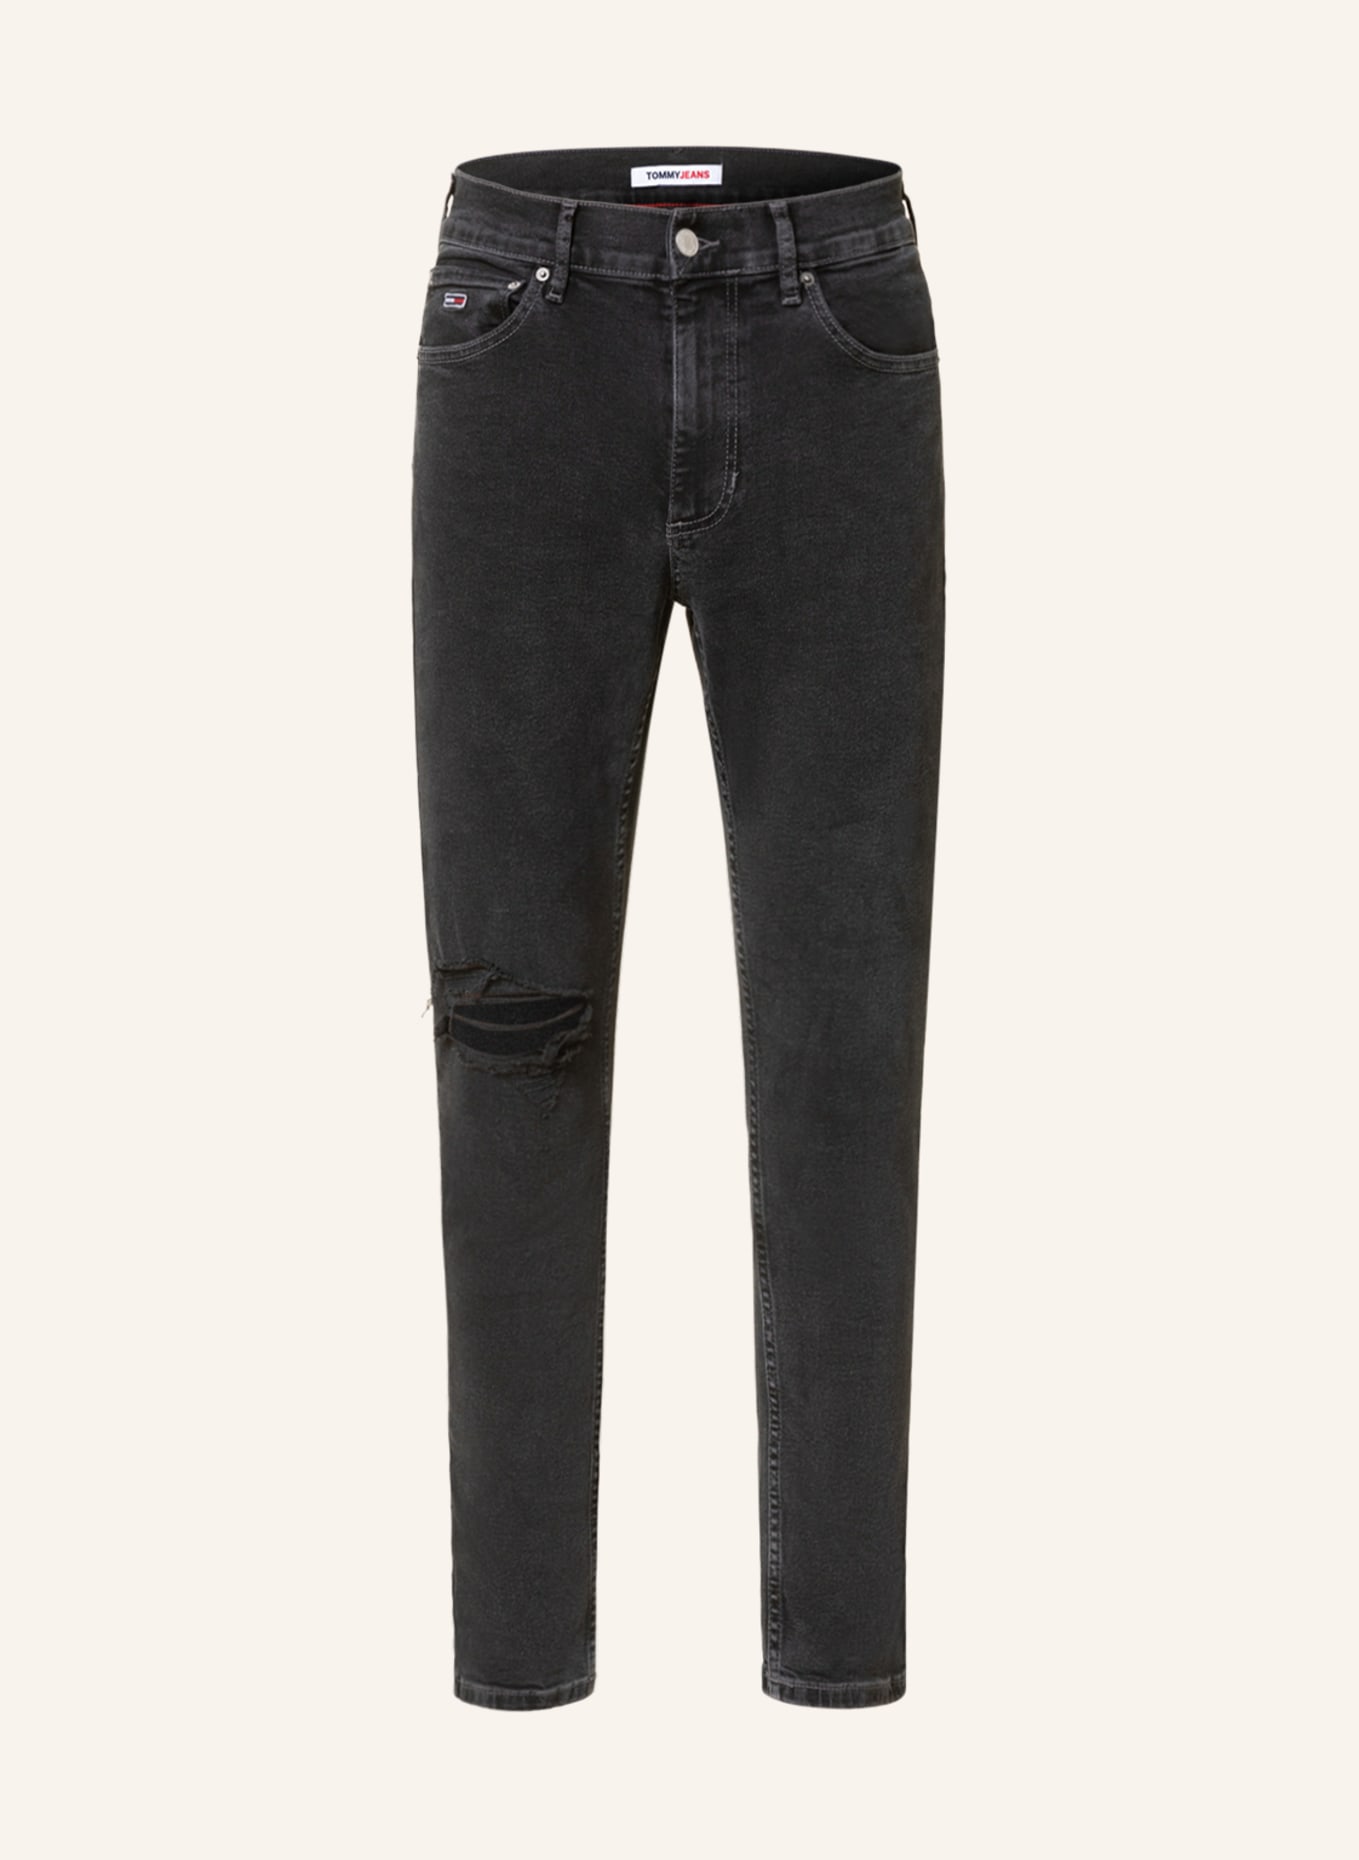 TOMMY JEANS Jeans SCANTON slim fit , Color: 1BZ Denim Black (Image 1)